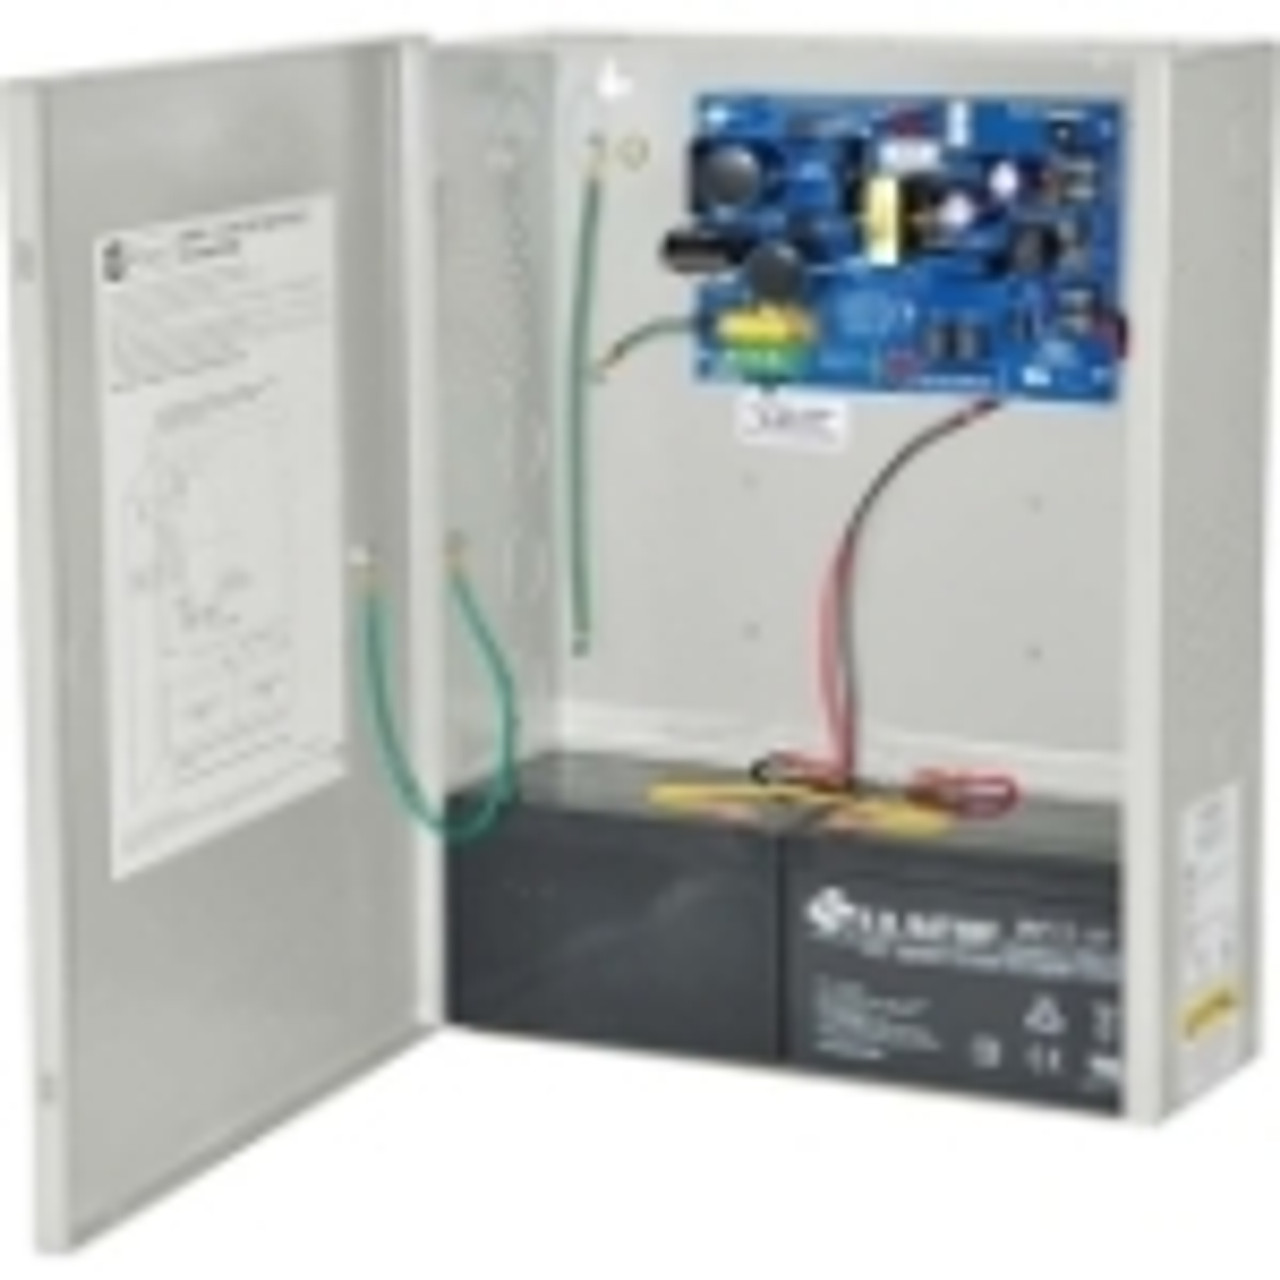 AL400ULXX Altronix Proprietary Power Supply 110 V AC Input Voltage Wall Mount